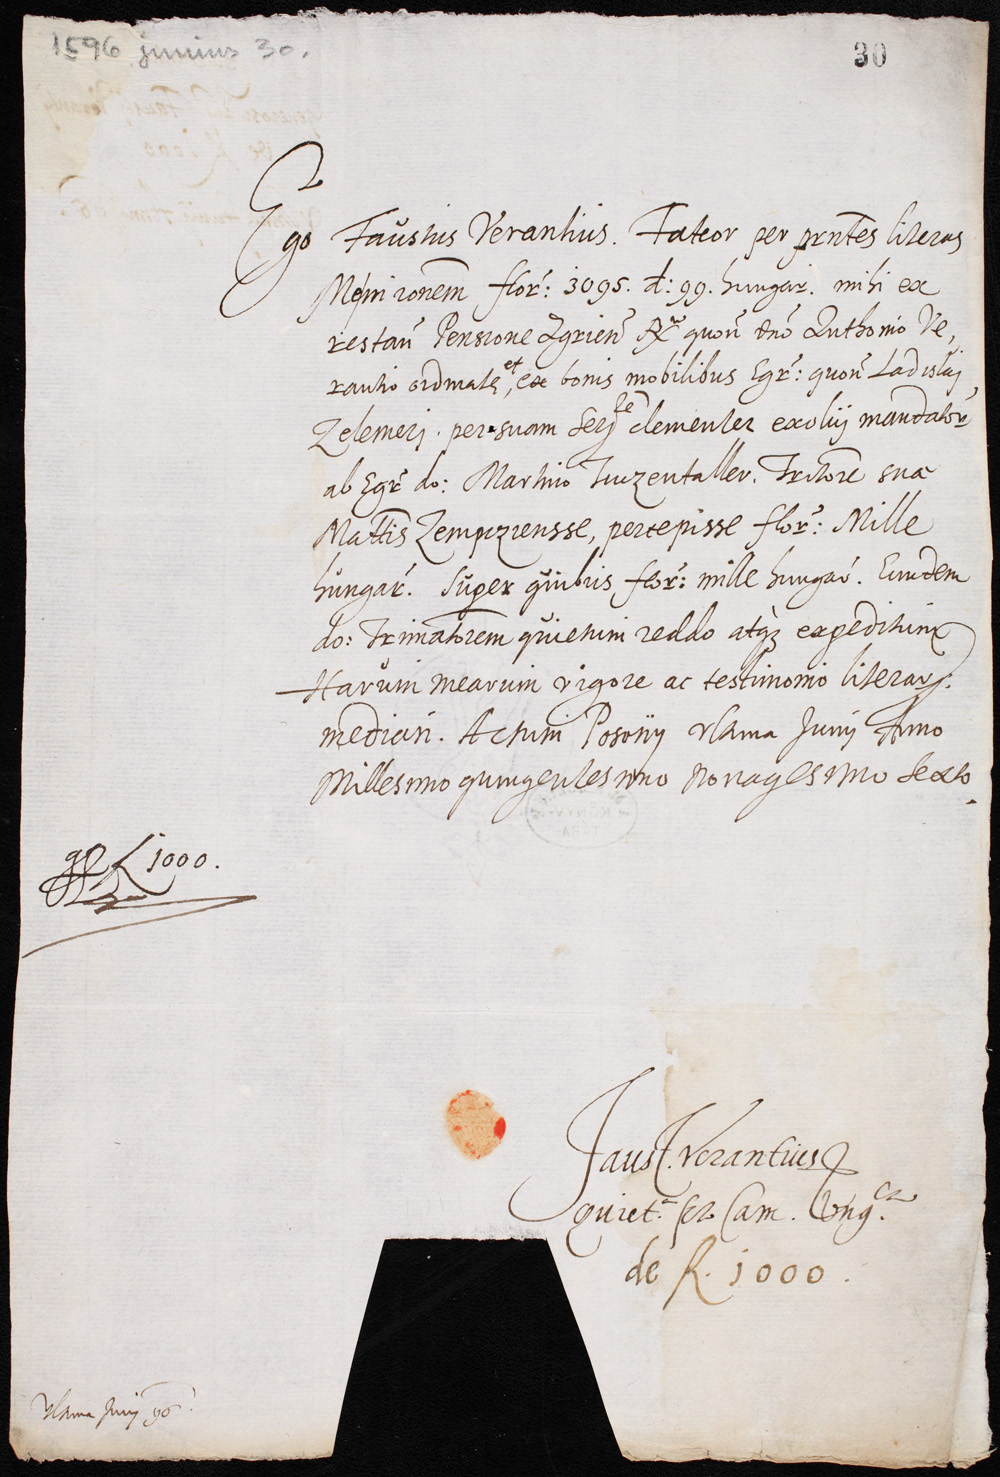 Verancsics Faustus 1596. június 30-án keltezésű autográfja. – Kézirattár. Jelzet: Fol.lat. 4006 II/30